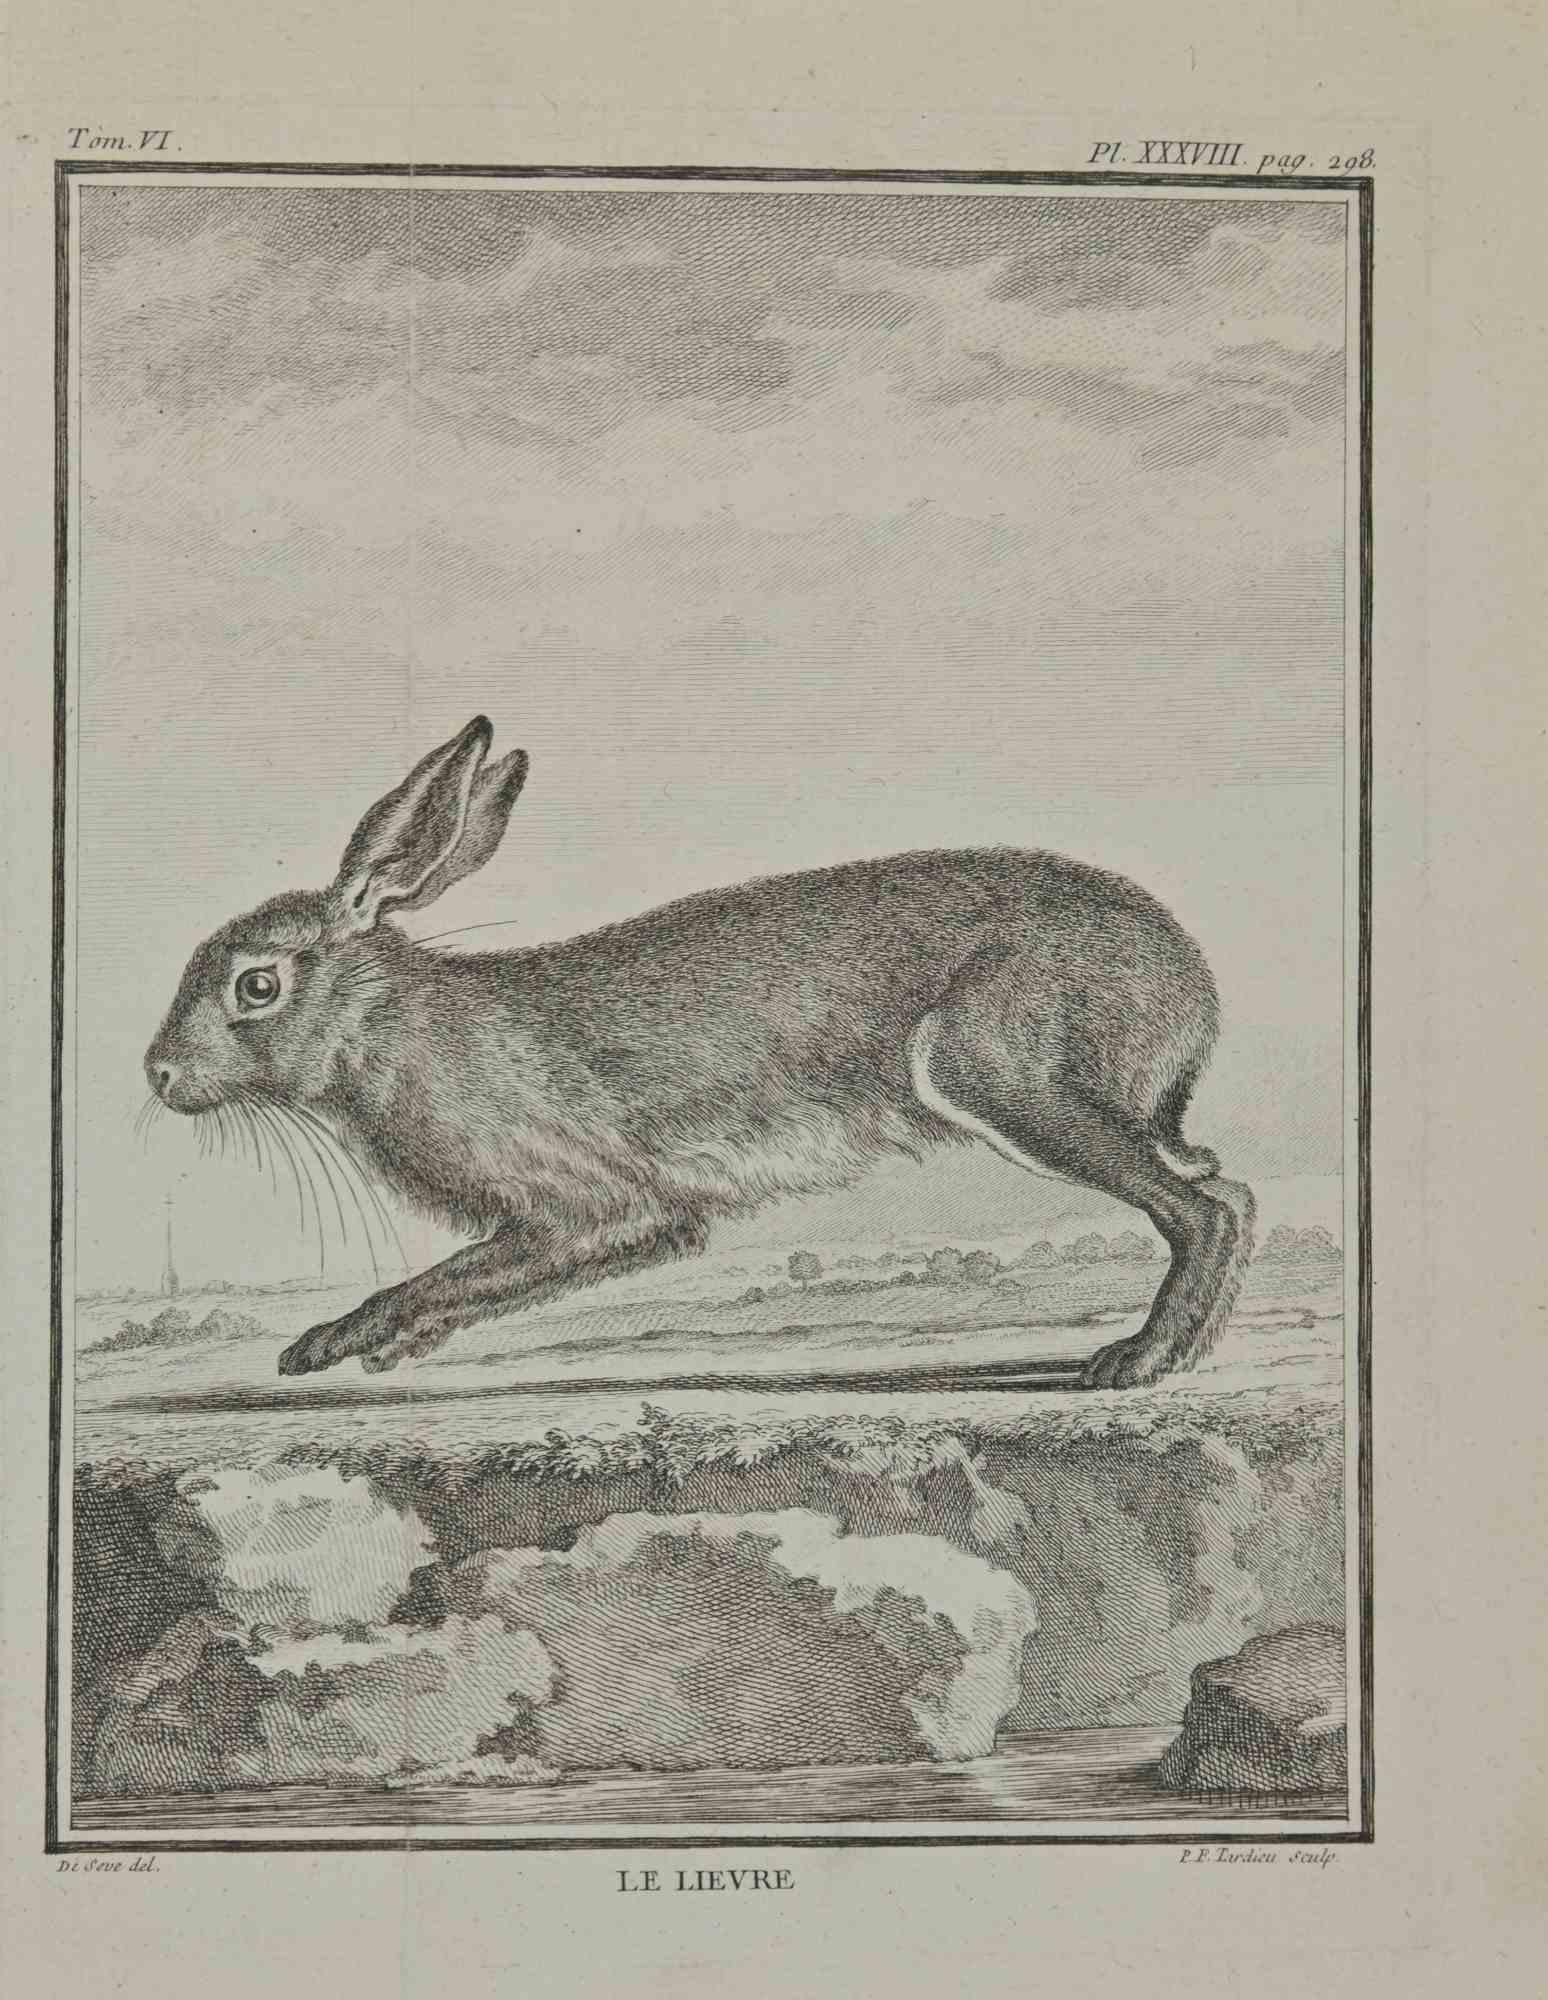 Le Lievre (The hare)  is an etching realized by Pierre Francois Tardieu in 1771.

It belongs to the suite "Histoire naturelle, générale et particulière avec la description du Cabinet du Roi".

Paris: Imprimerie Royale, 1749-1771. 

25 x 19